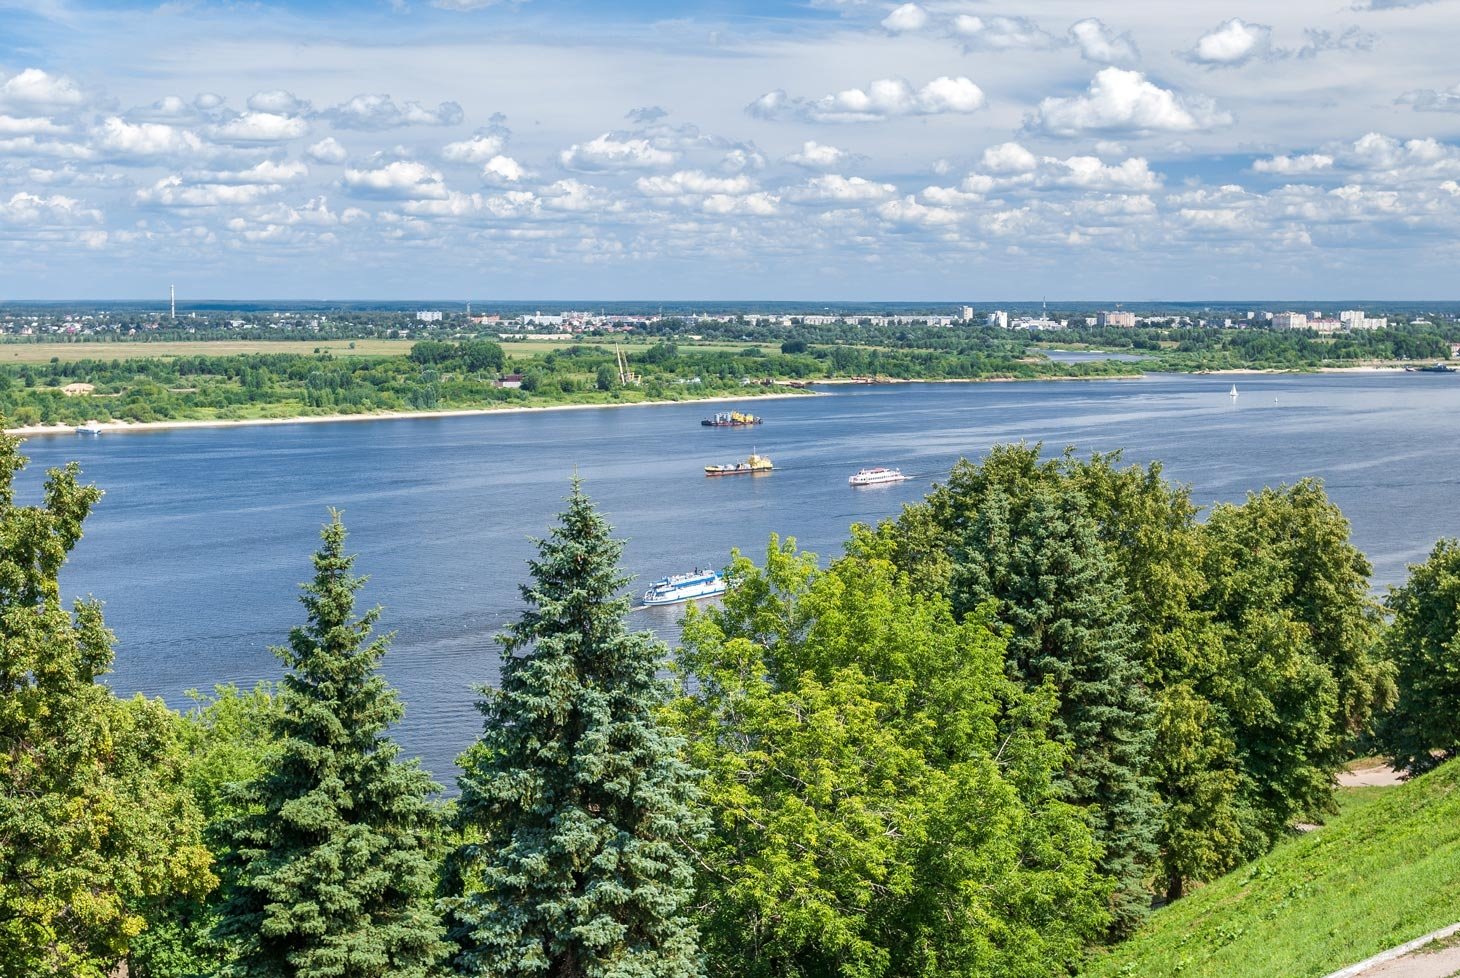 Малые реки Нижнего Новгорода оказались возможным источником загрязнения Волги